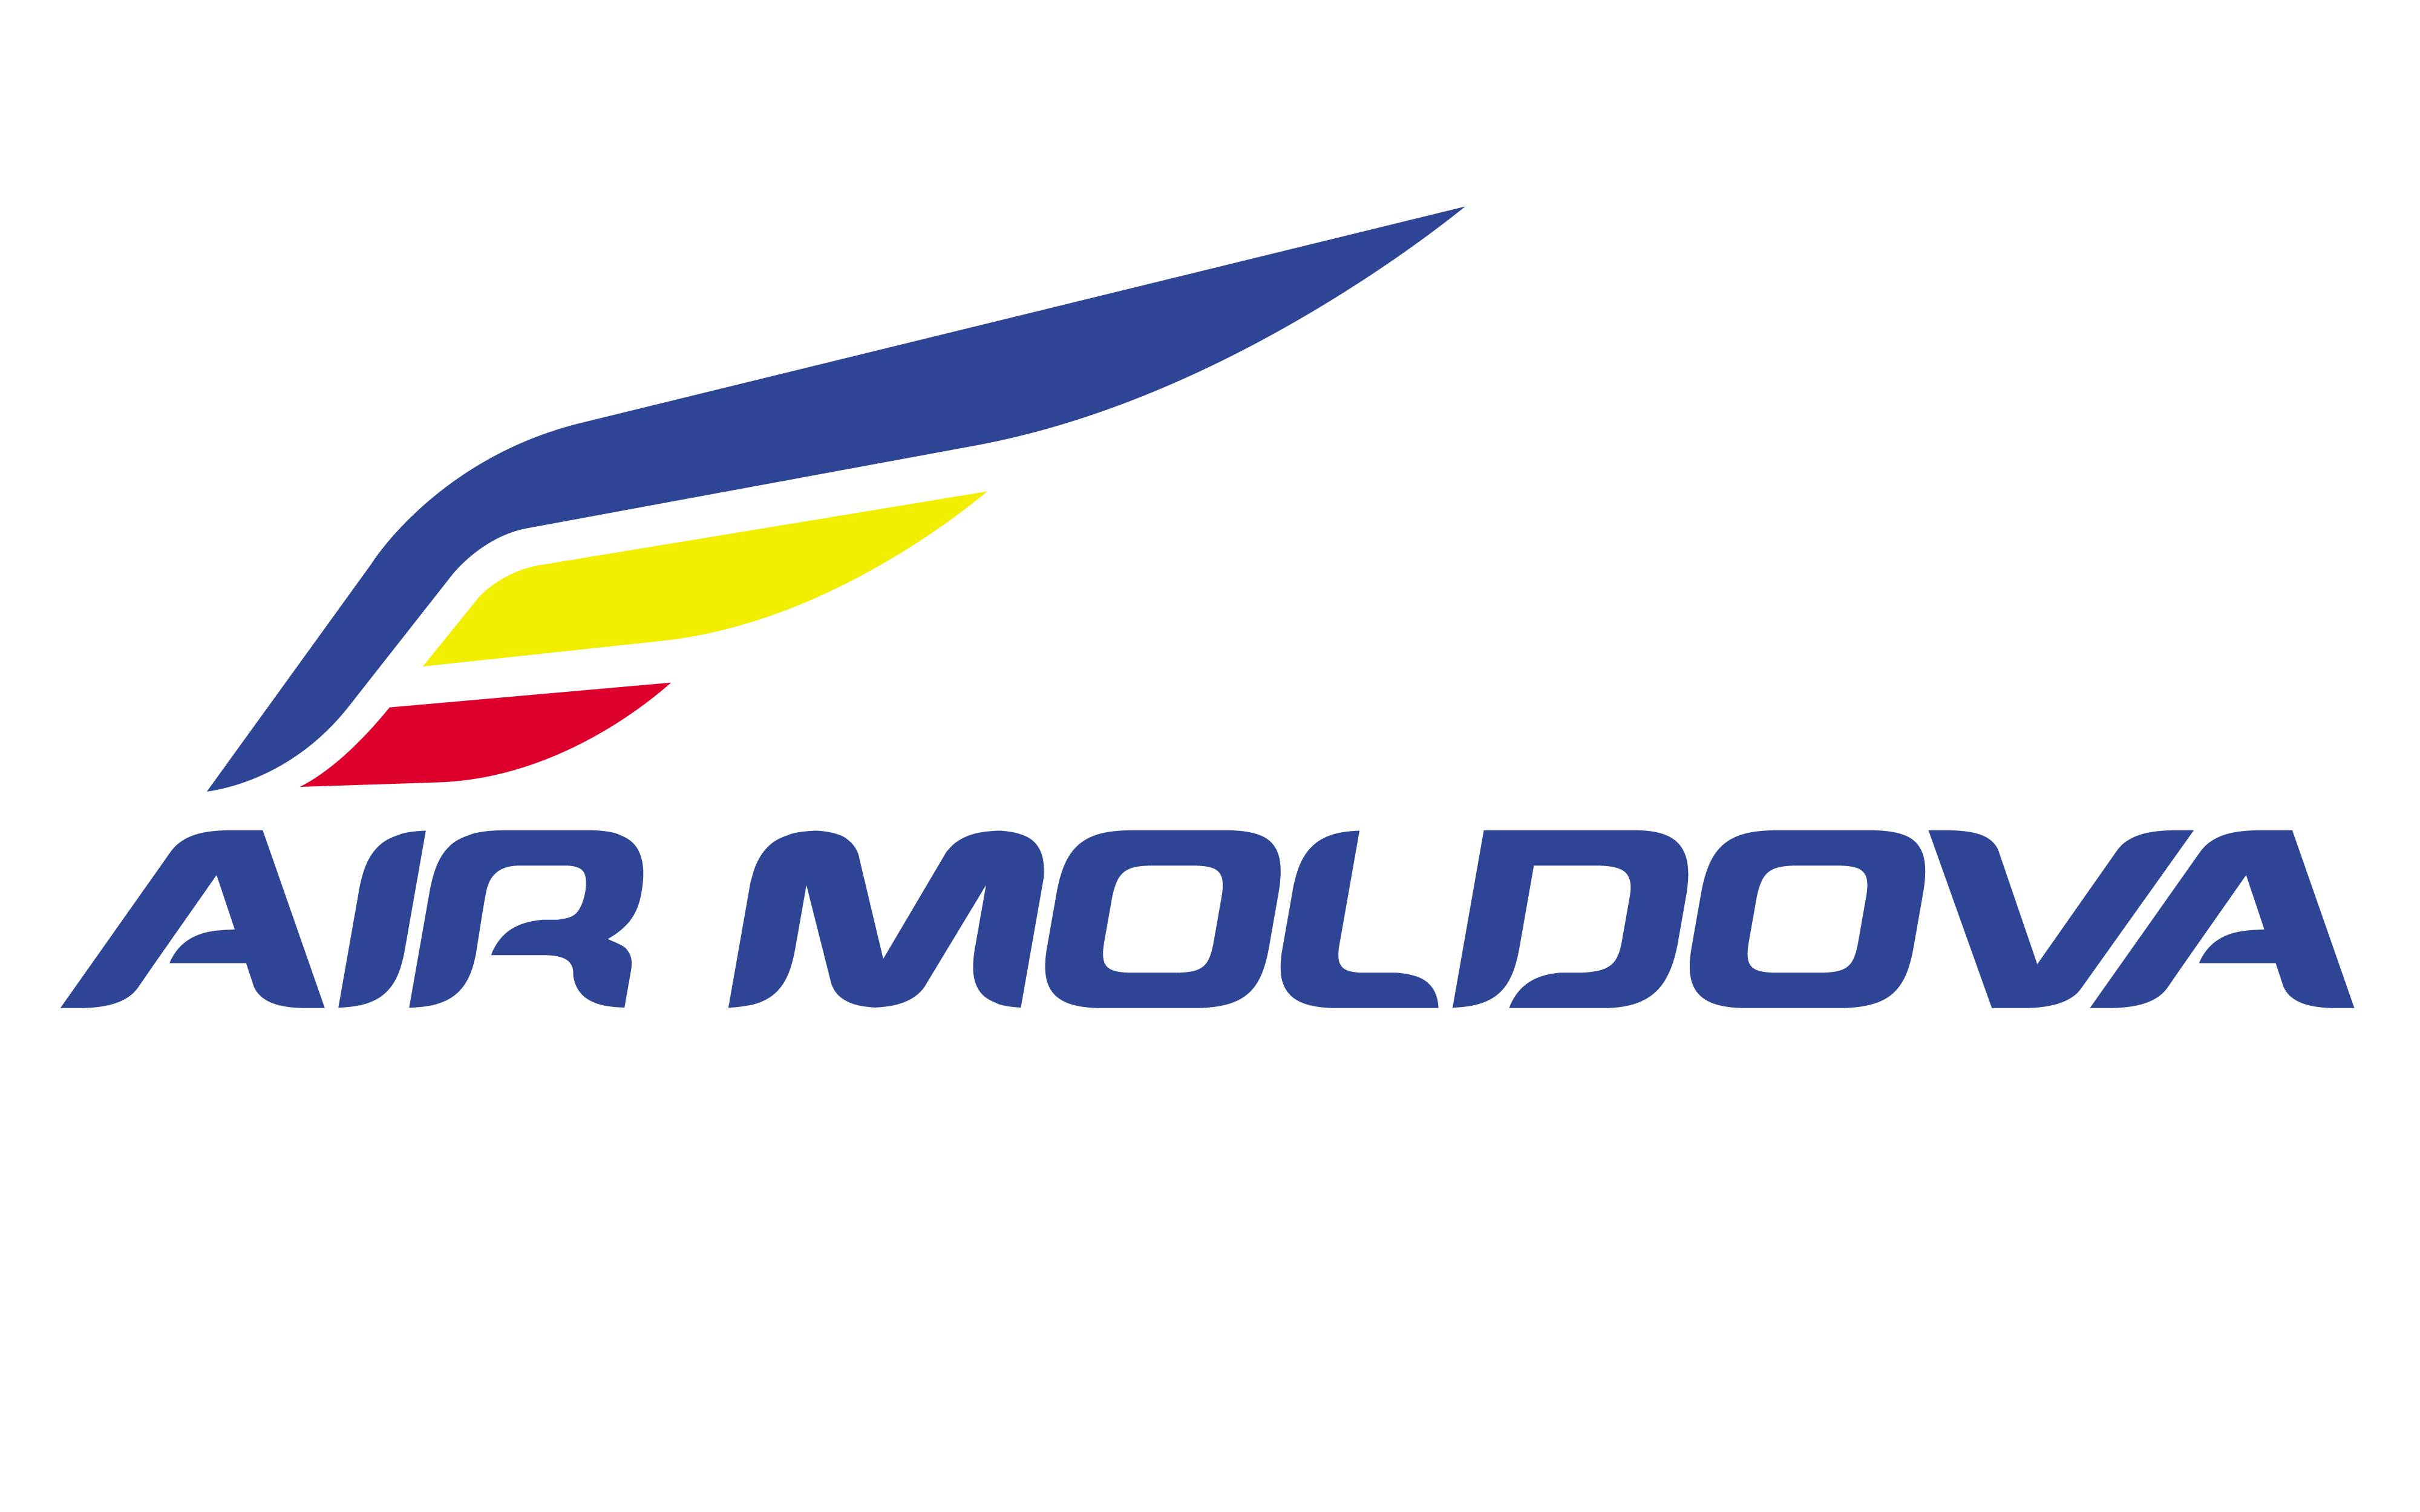 Fly one авиакомпания молдова официальный сайт багаж | авиакомпании и авиалинии россии и мира